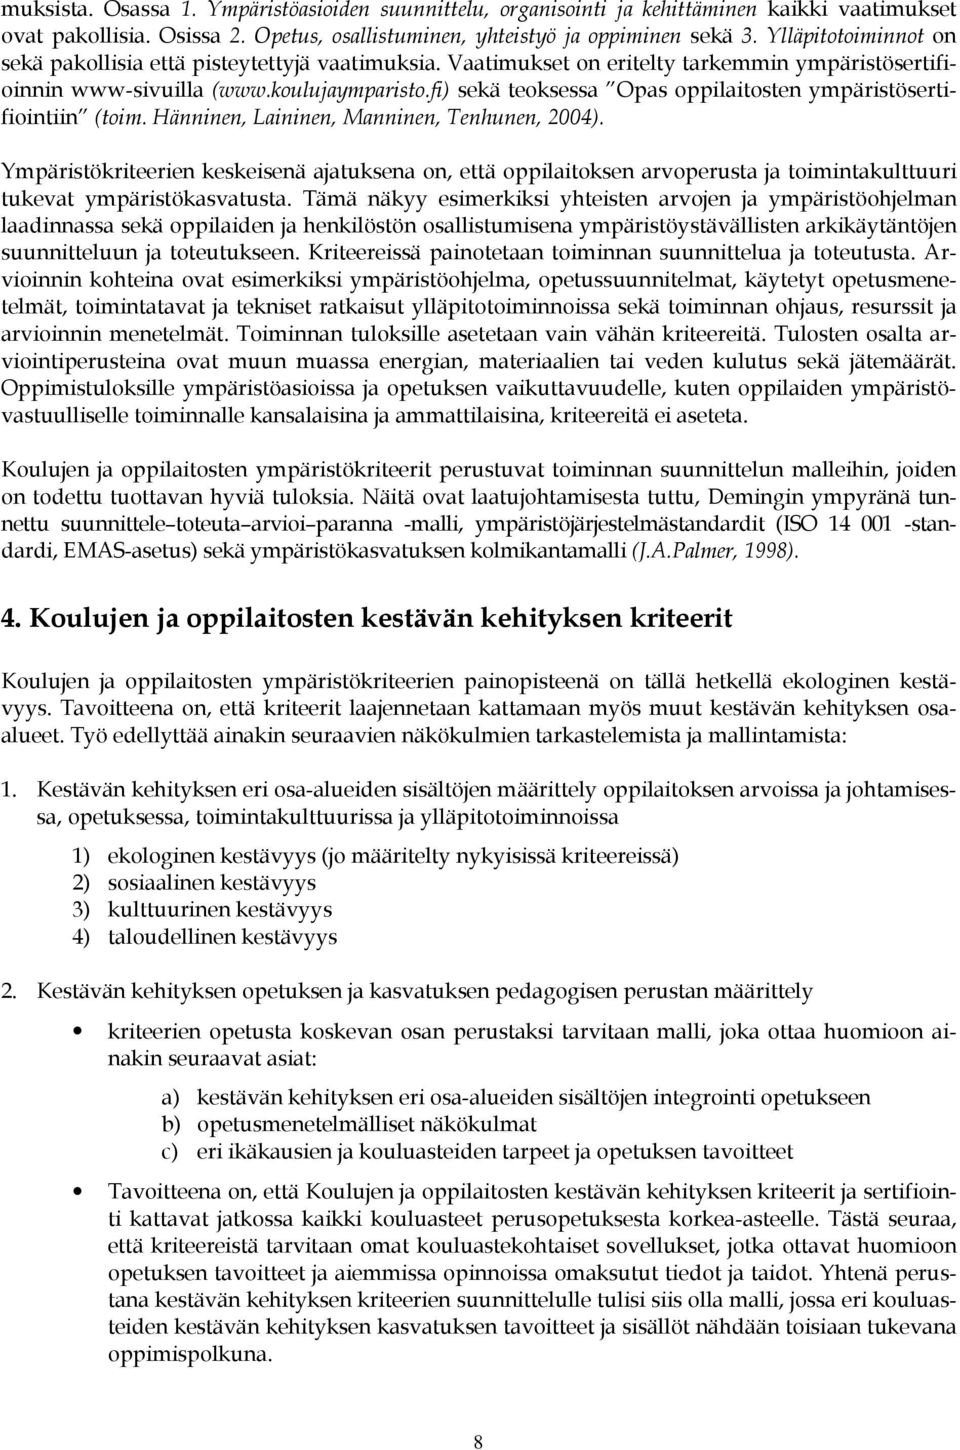 fi) sekä teoksessa Opas oppilaitosten ympäristösertifiointiin (toim. Hänninen, Laininen, Manninen, Tenhunen, 2004).